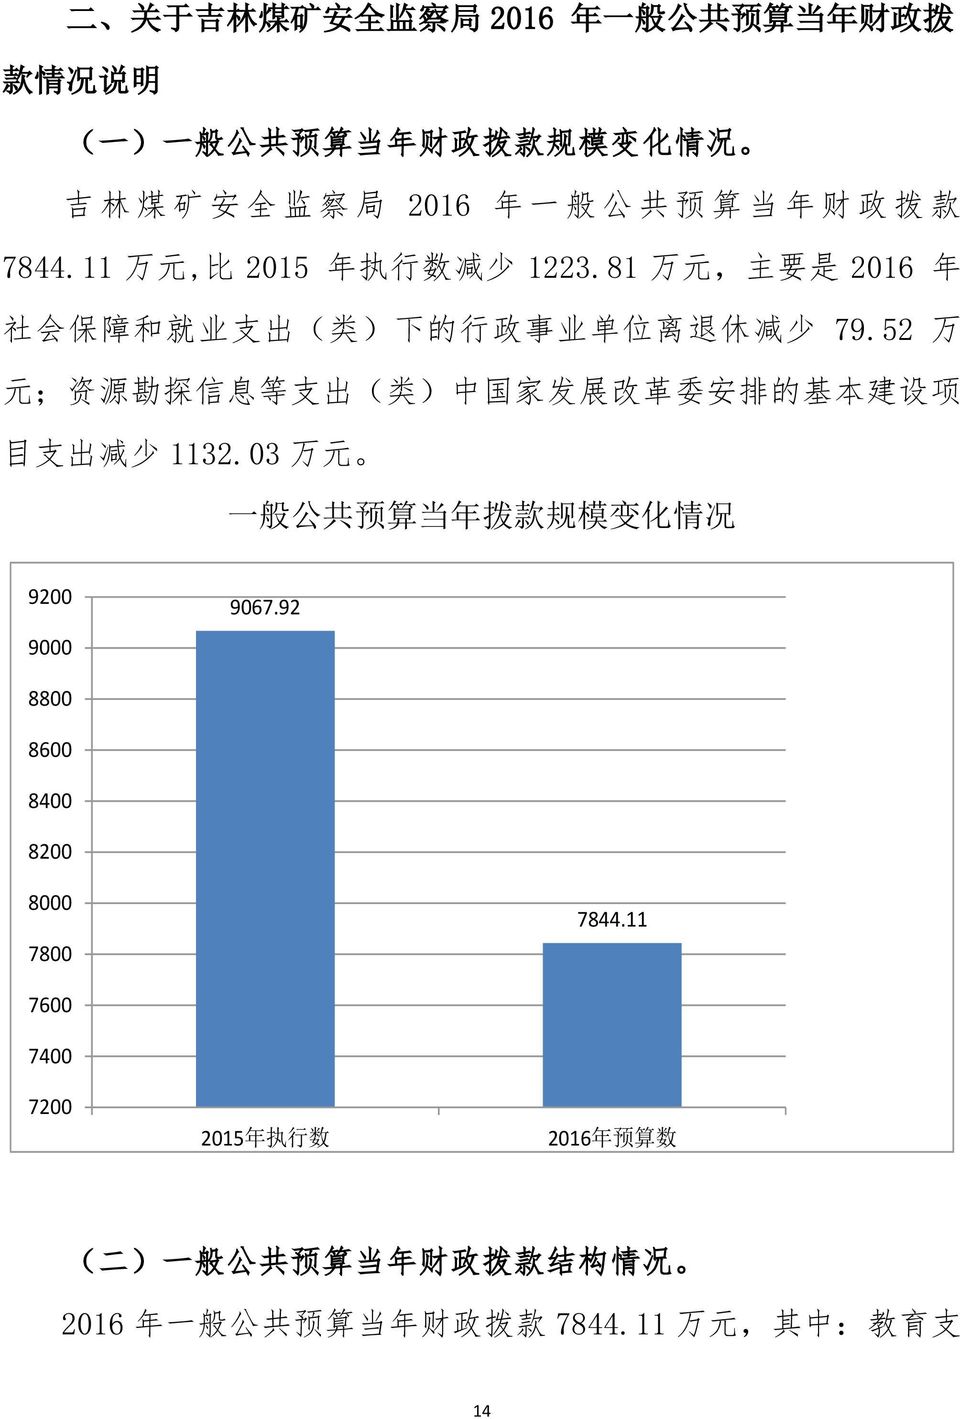 52 万 元 ; 资 源 勘 探 信 息 等 支 出 ( 类 ) 中 国 家 发 展 改 革 委 安 排 的 基 本 建 设 项 目 支 出 减 少 1132.03 万 元 一 般 公 共 预 算 当 年 拨 款 规 模 变 化 情 况 9200 9000 9067.